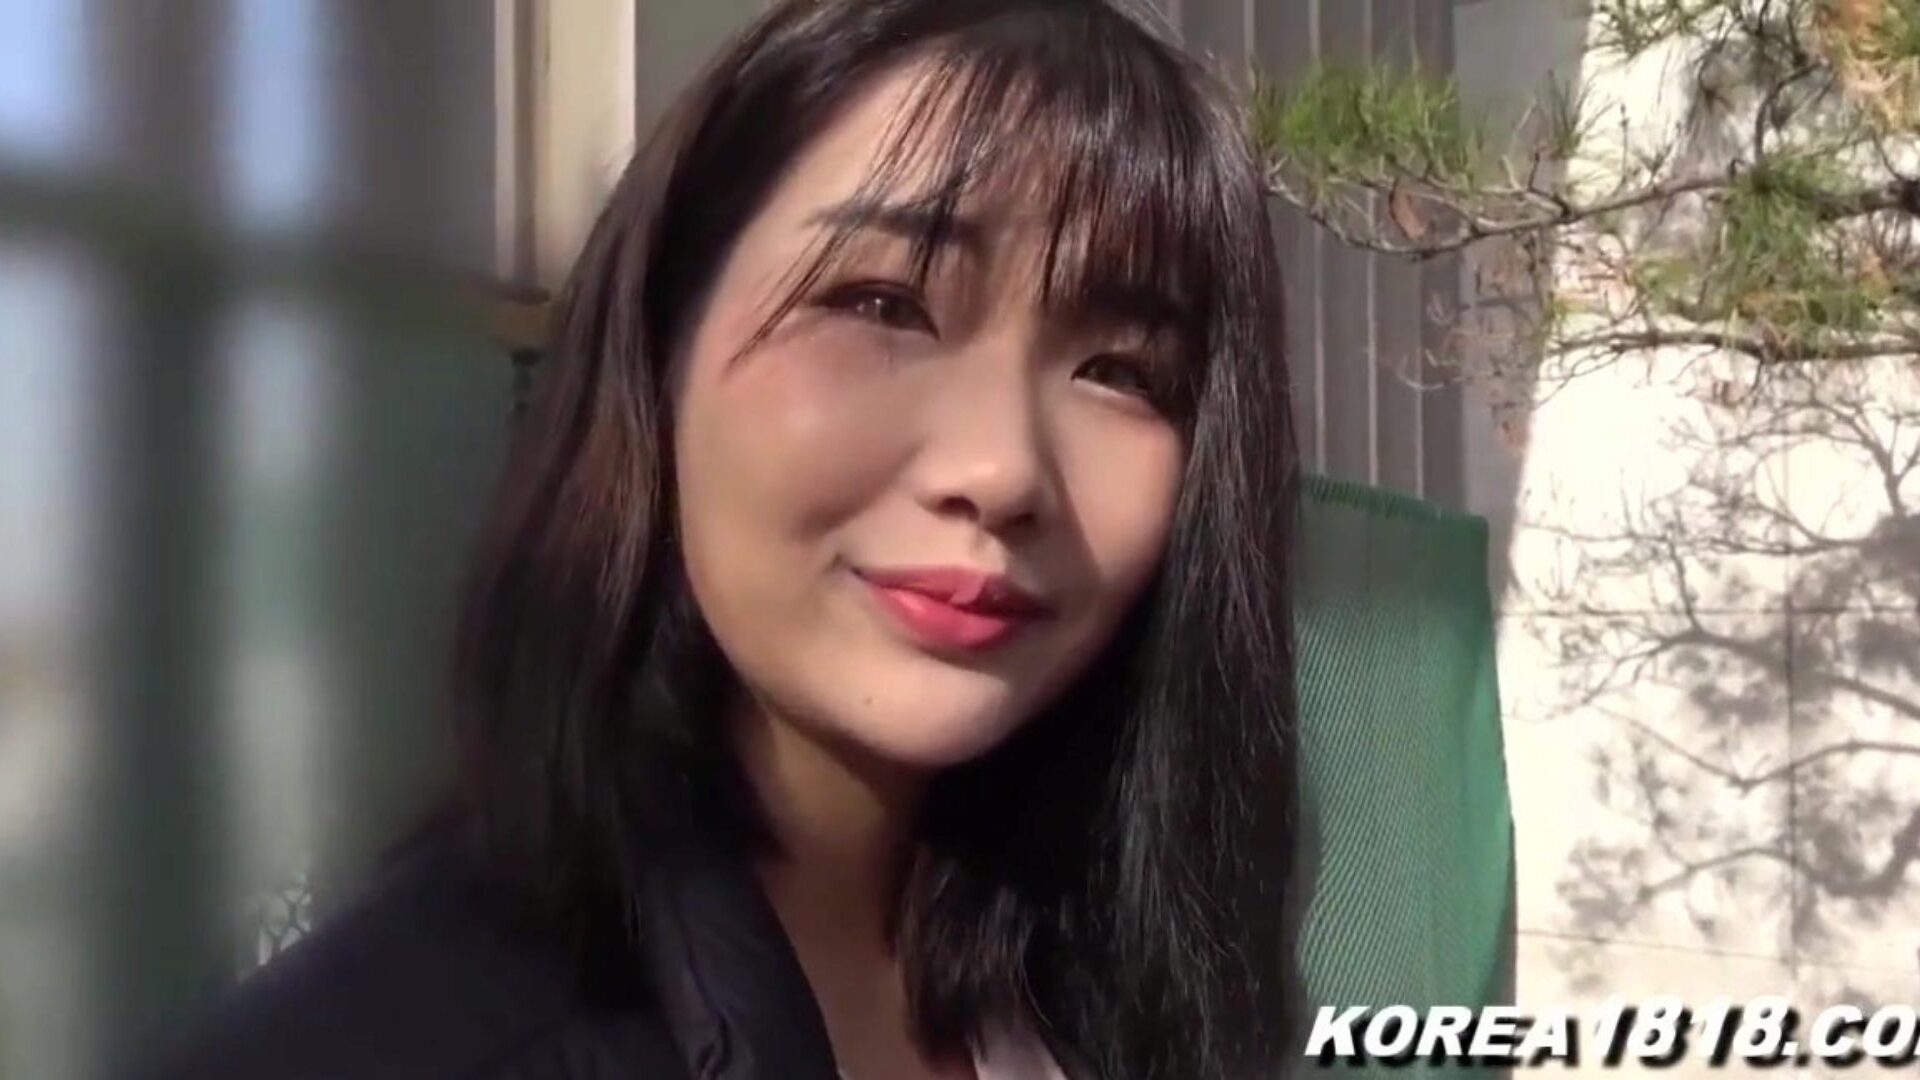 koreanischer Porno super heiße koreanische Schlampe wird geknallt